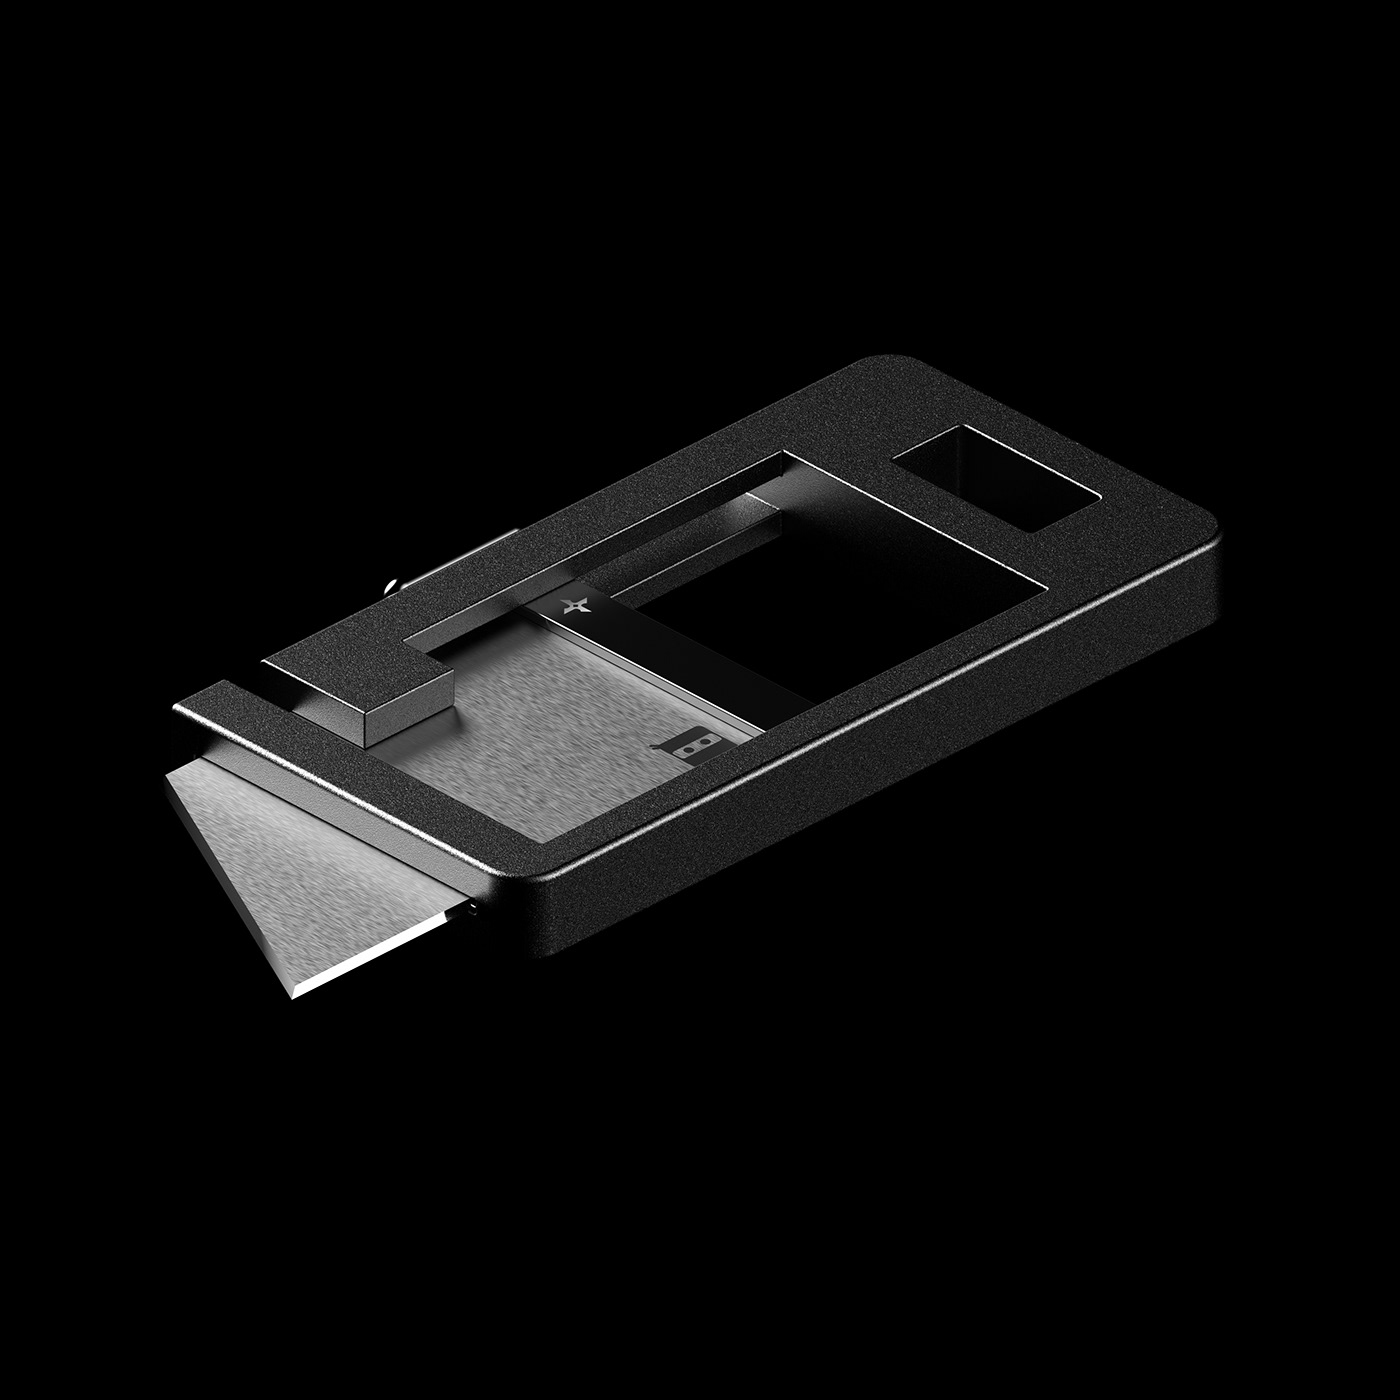 concept cutter design details industrial design  knife Packaging product product design  Render